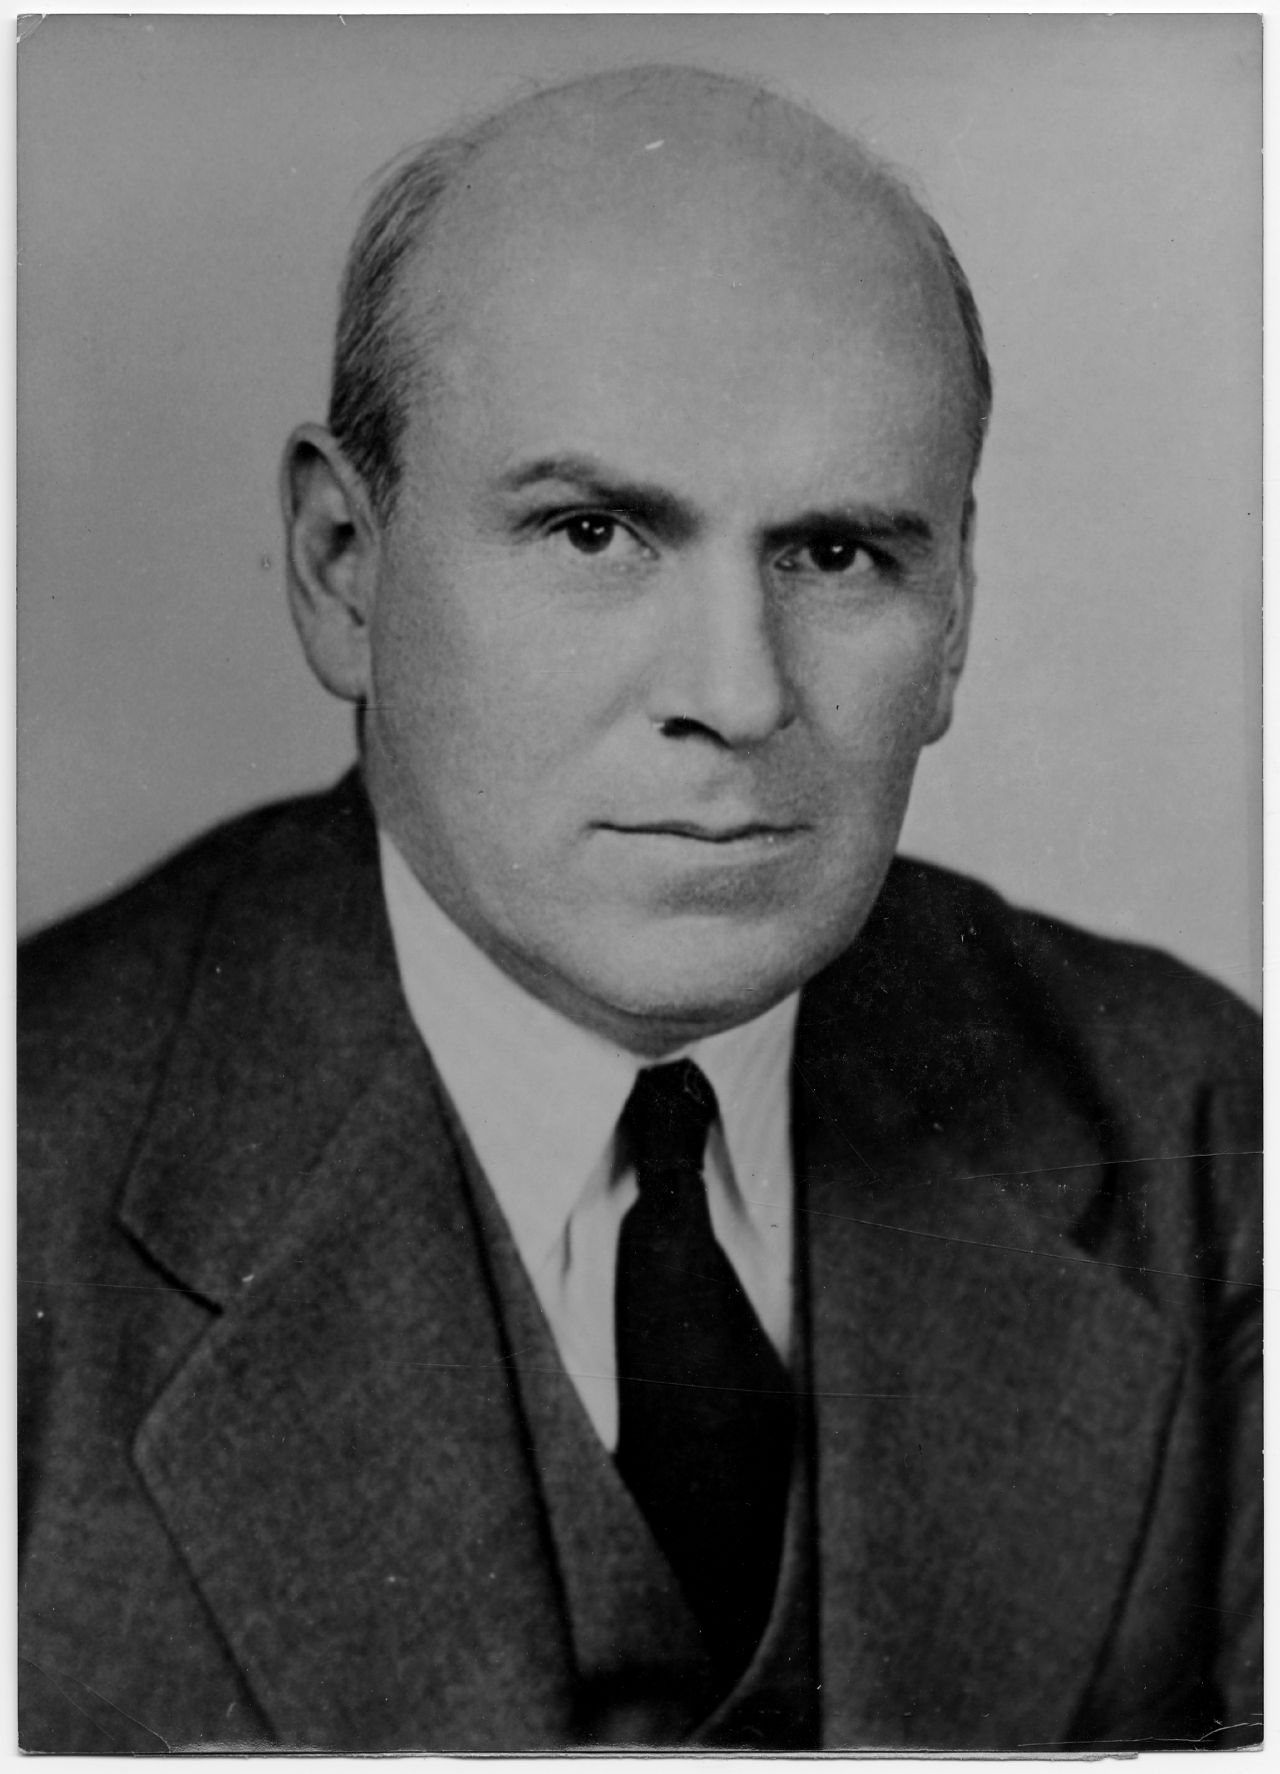 Porträtfoto von John McCloy, Hoher Kommissar der US-Regierung und Militärgouverneur in Deutschland (1949-1952).